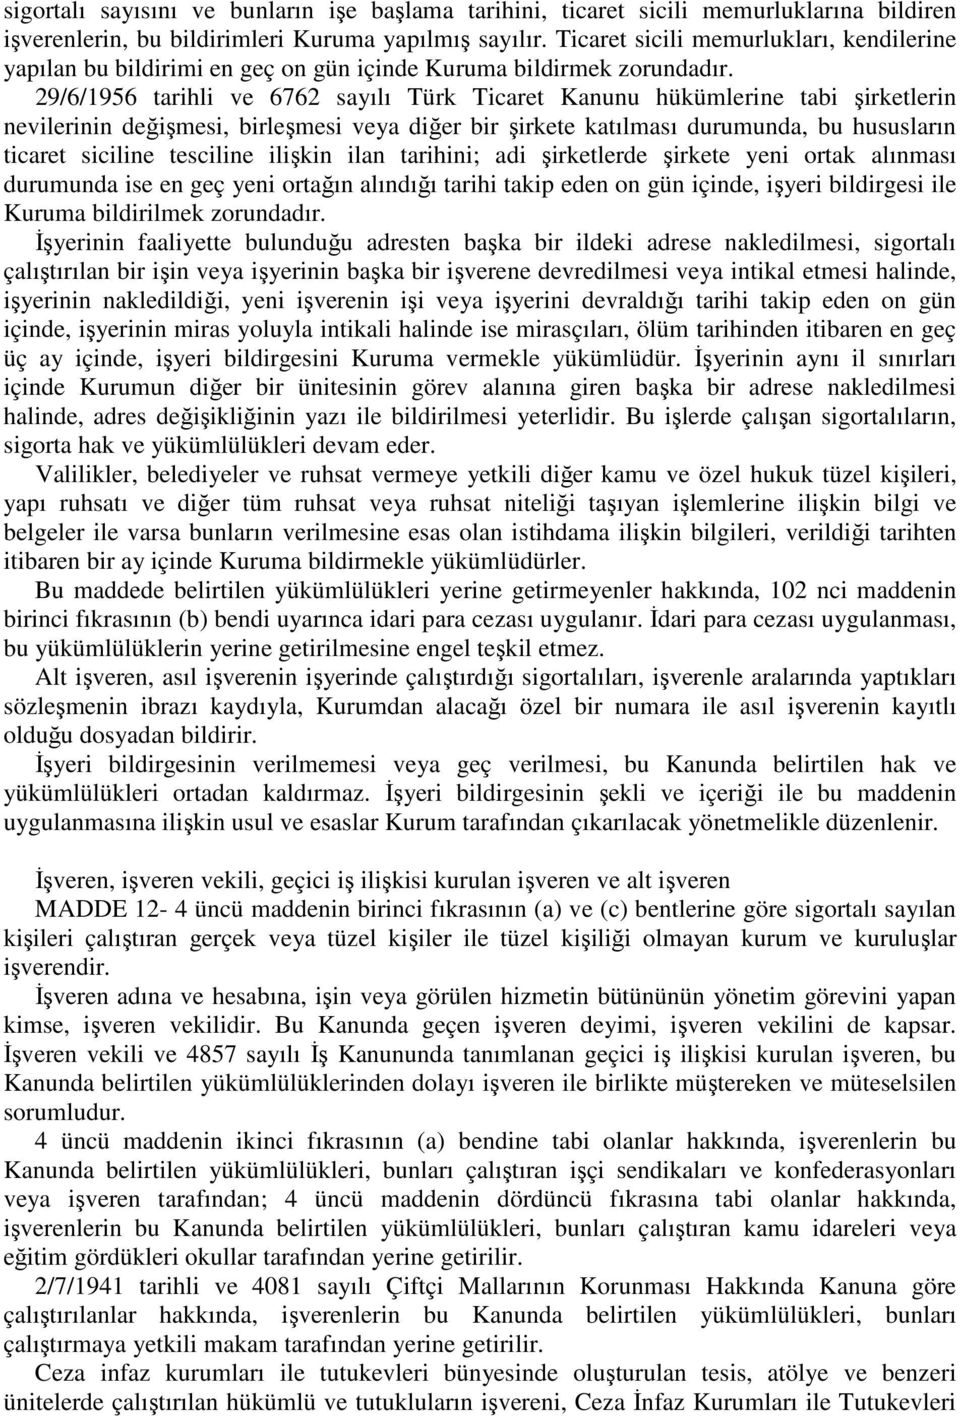 29/6/1956 tarihli ve 6762 sayılı Türk Ticaret Kanunu hükümlerine tabi şirketlerin nevilerinin değişmesi, birleşmesi veya diğer bir şirkete katılması durumunda, bu hususların ticaret siciline